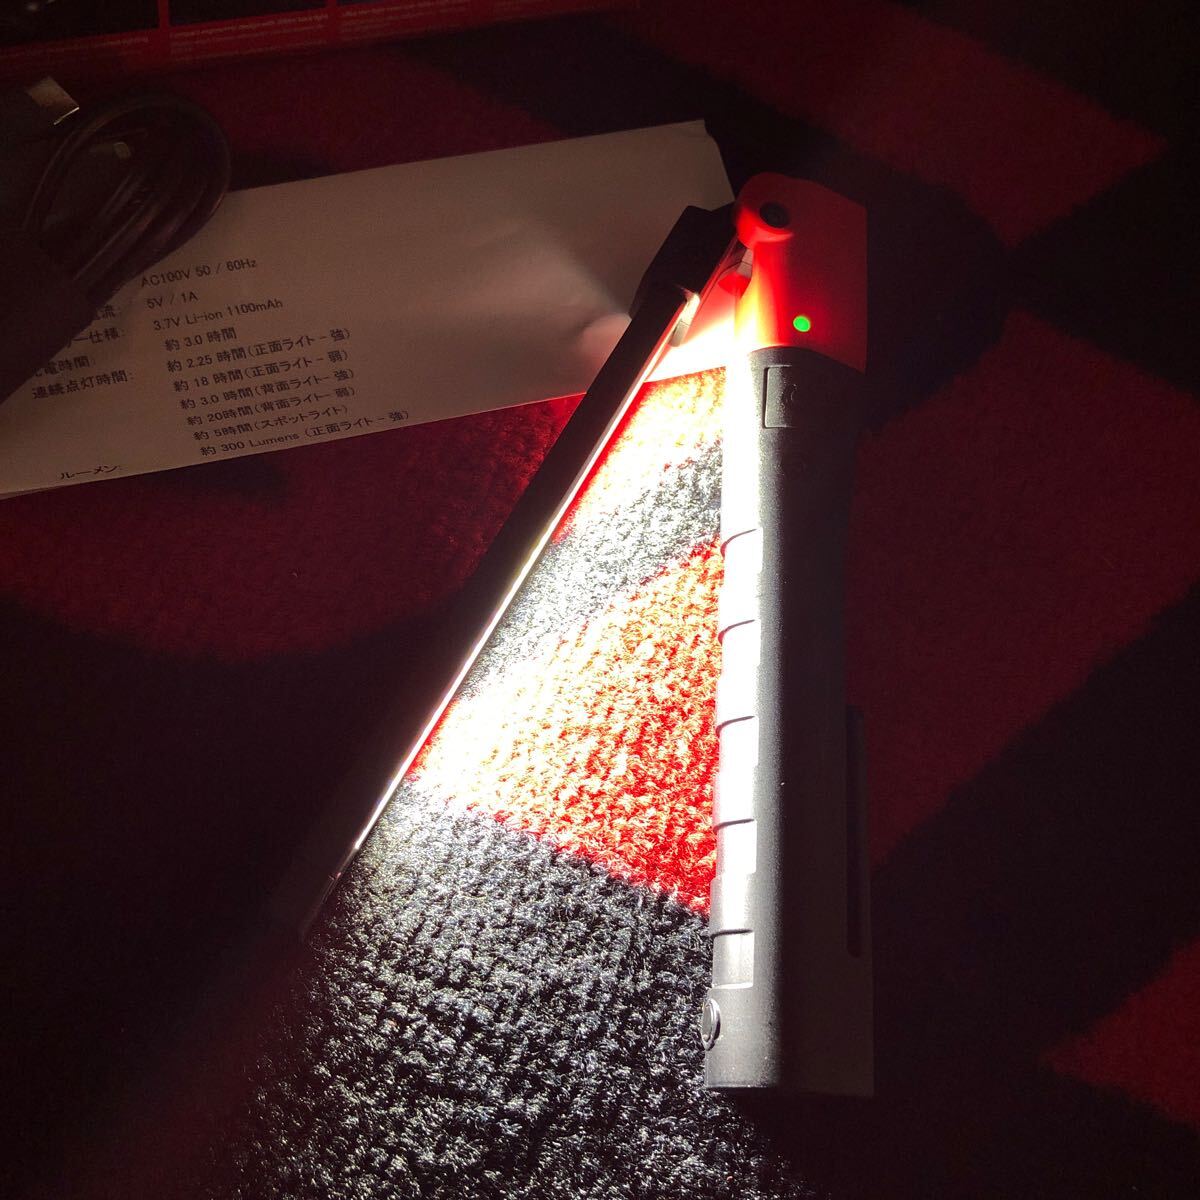  Snap-on LED рабочее освещение ECPND032J фонарик-ручка Snap-on рабочее освещение авторучка type складной 3WAY новый товар красный 